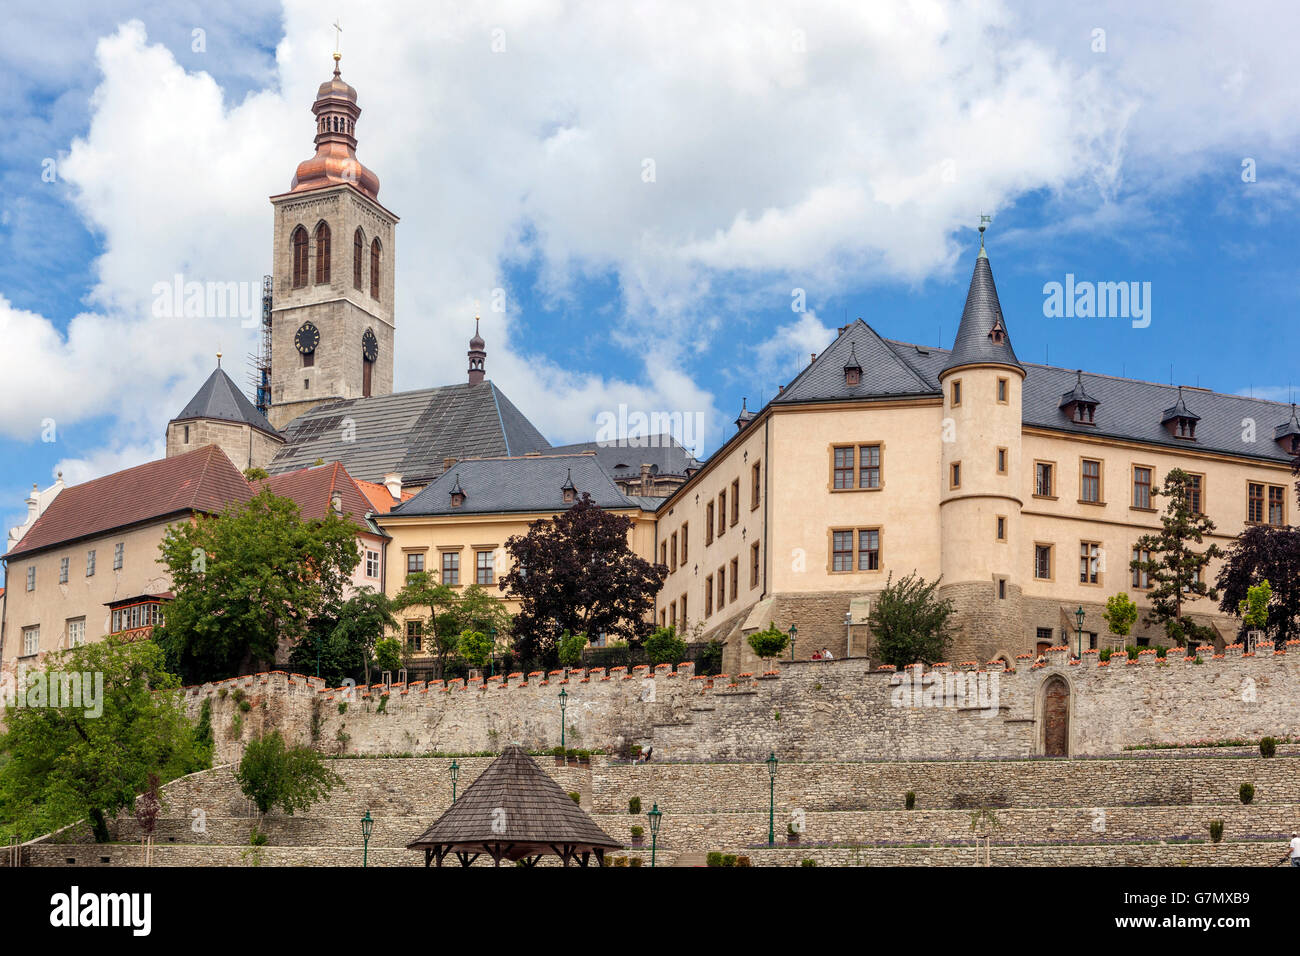 La iglesia de St James y un tribunal italiano, Kutná Hora, ciudad de la UNESCO, República Checa Foto de stock